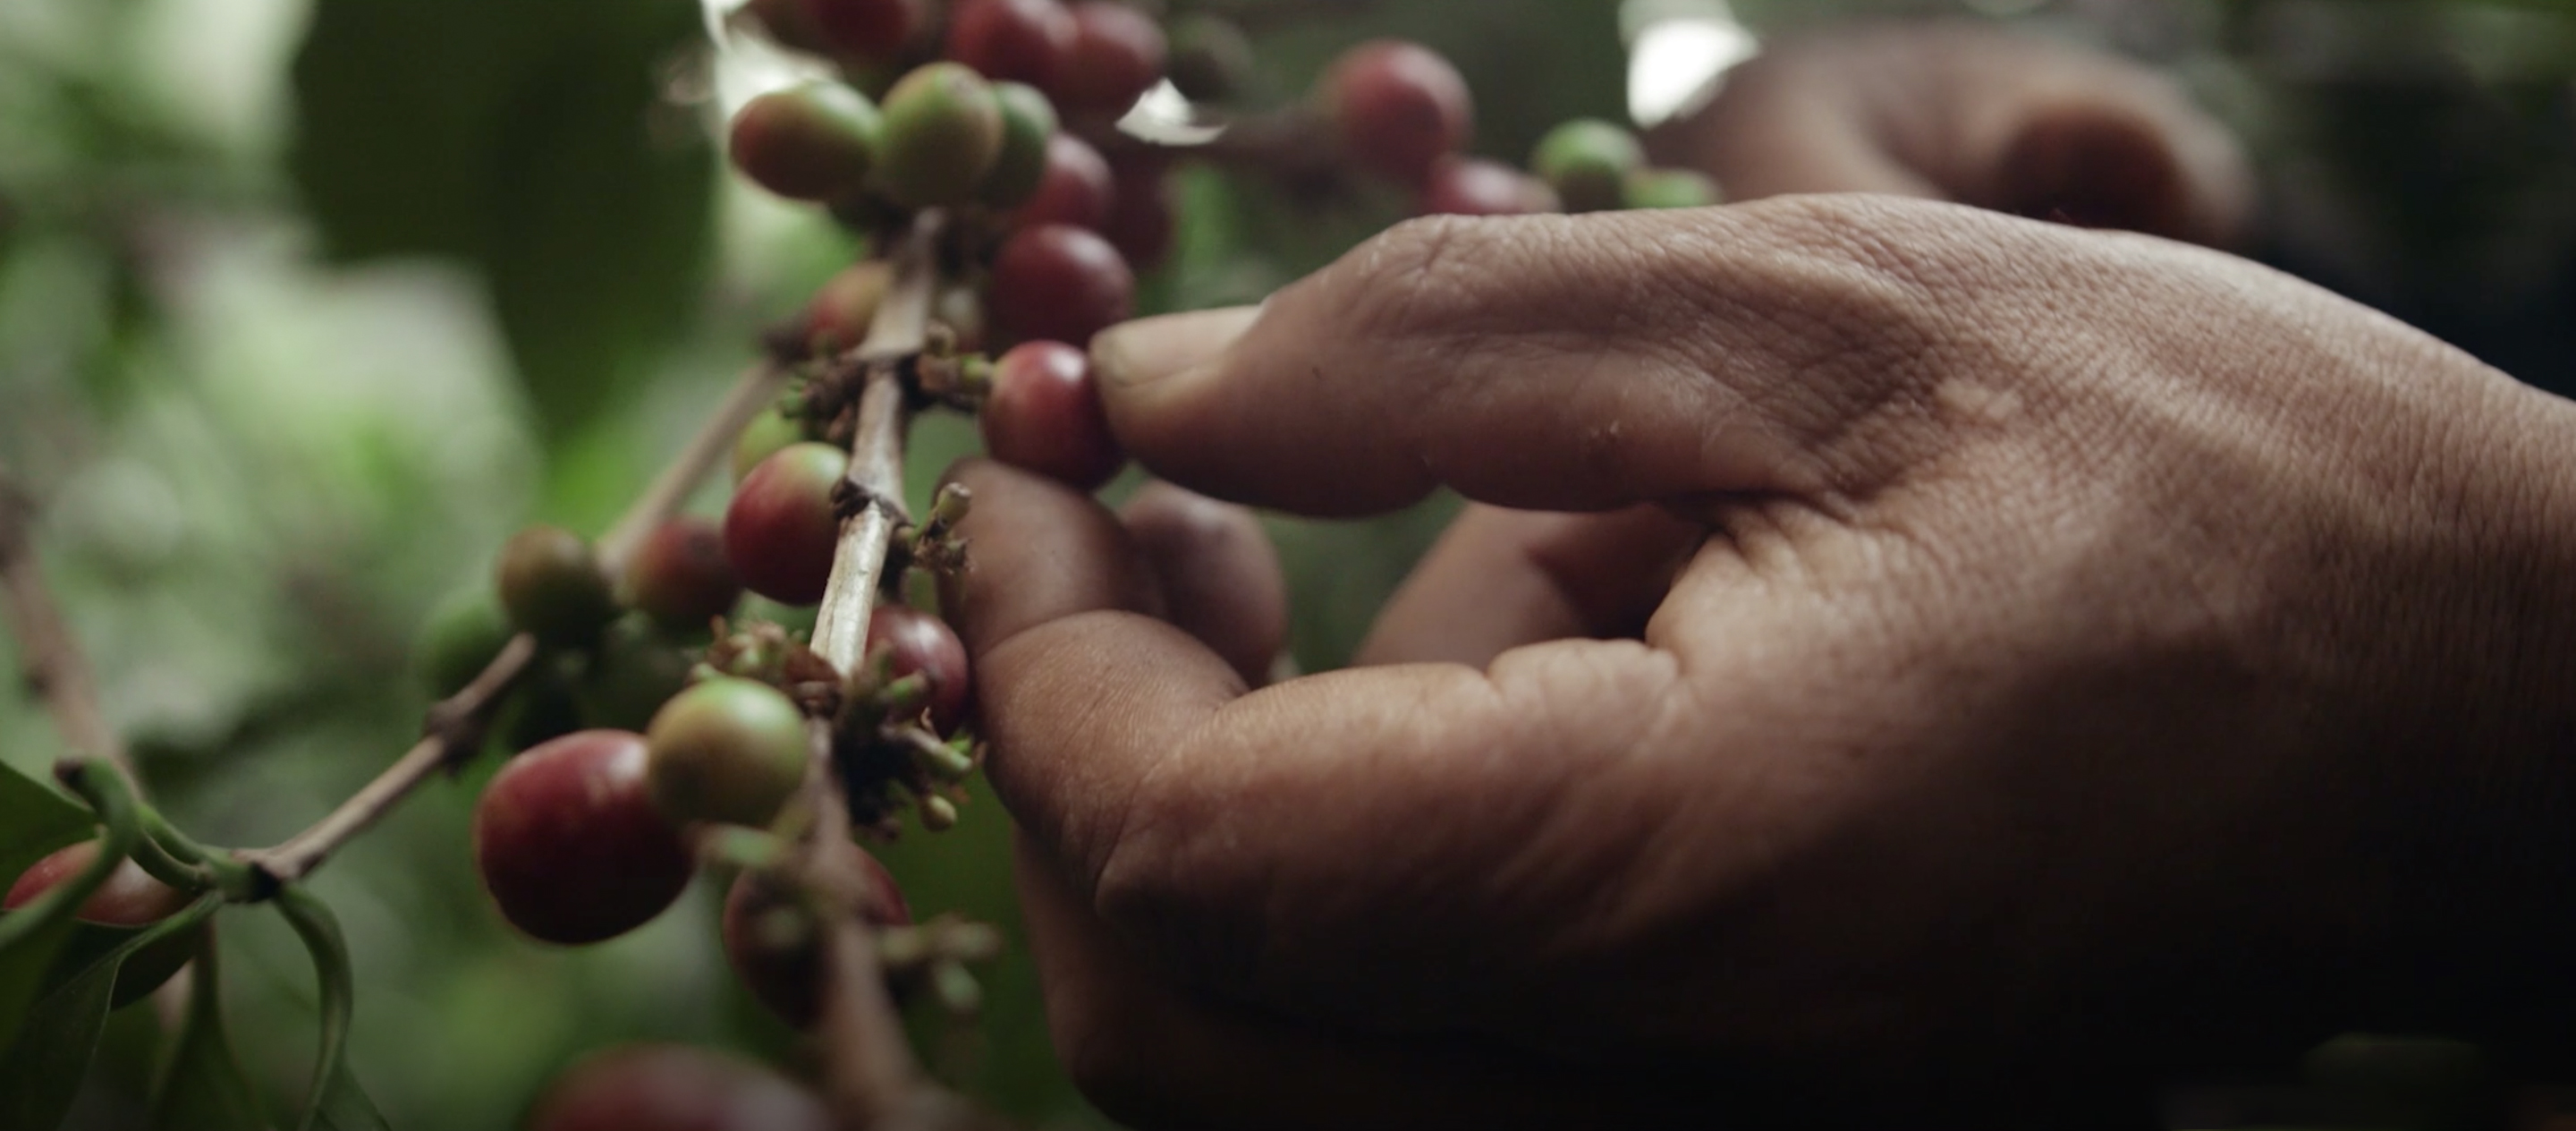 Café Amazon Drip Coffee Pha lung กาแฟ drip bag ที่อยากพัฒนาคุณภาพชีวิตเกษตรกร ผ่านกาแฟรสชาติดีพกพาสะดวกไปพร้อมๆ กัน